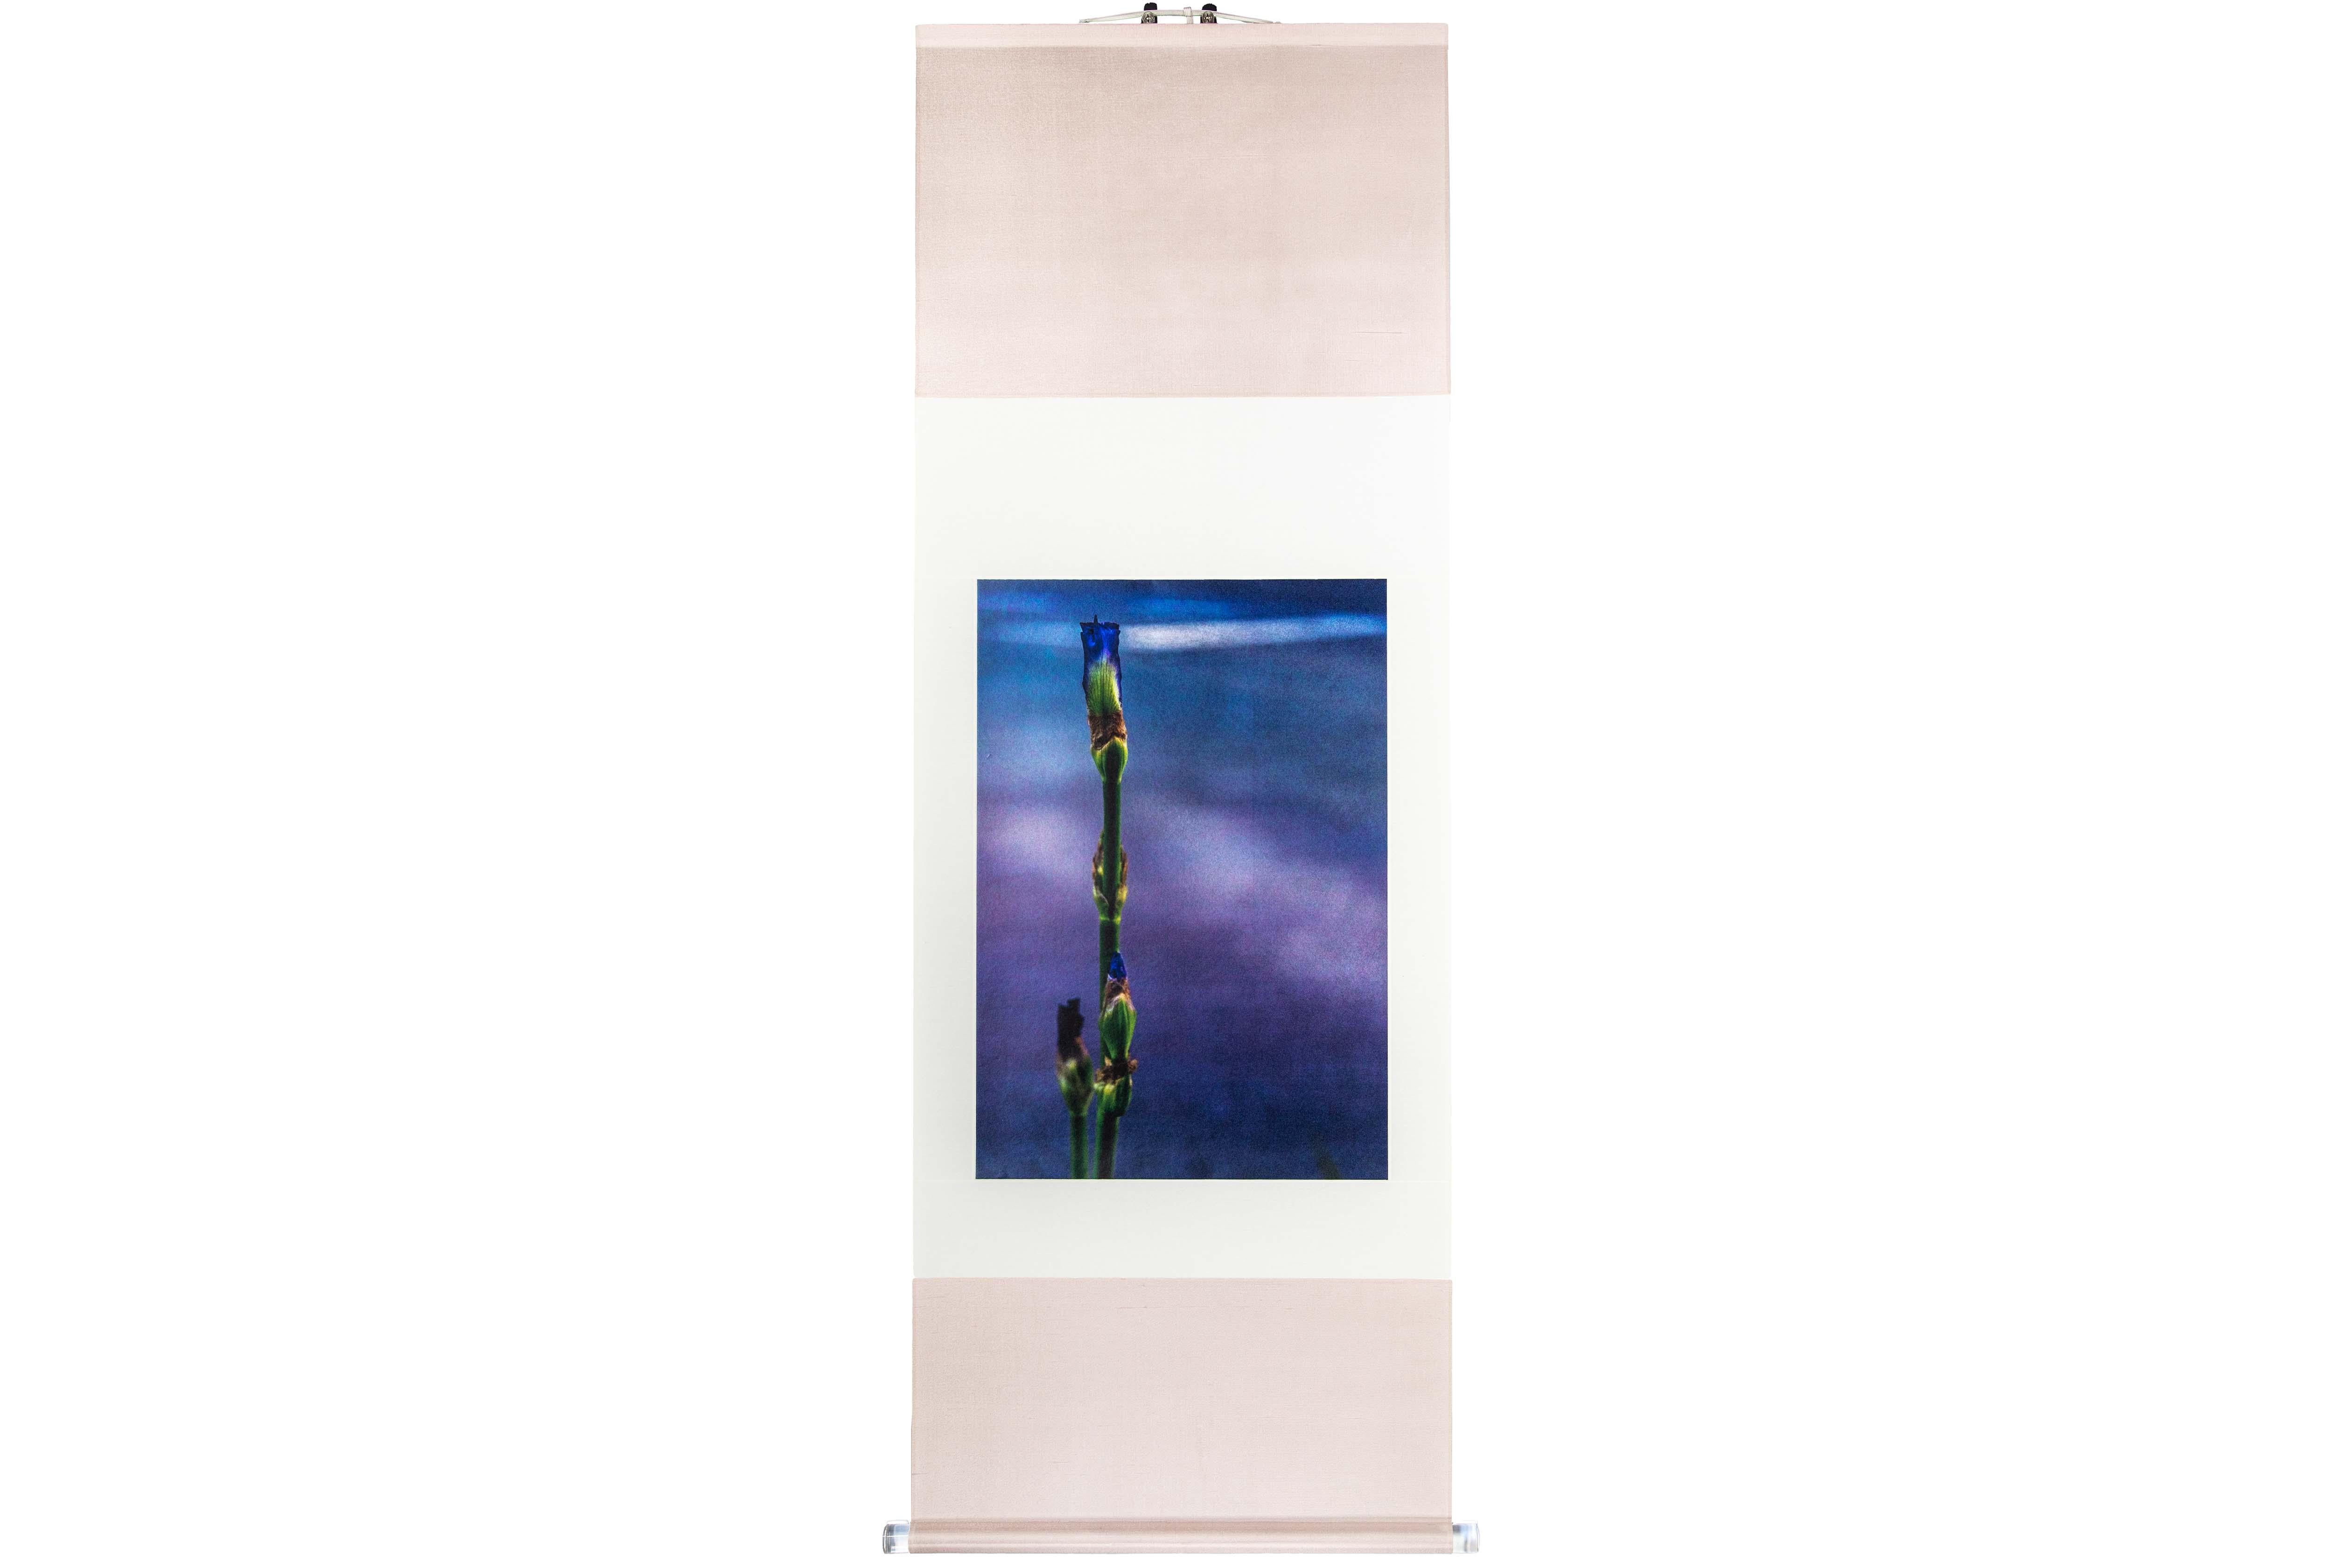 Tirage UV d'une photographie numérique sur feuille d'argent sur papier et monté sur rouleau de soie japonais

Kojun est un artiste autodidacte américain multimédia né en 1977 et basé à Tokyo, au Japon, depuis 1999. Le projet Kojun, lancé en 2010,